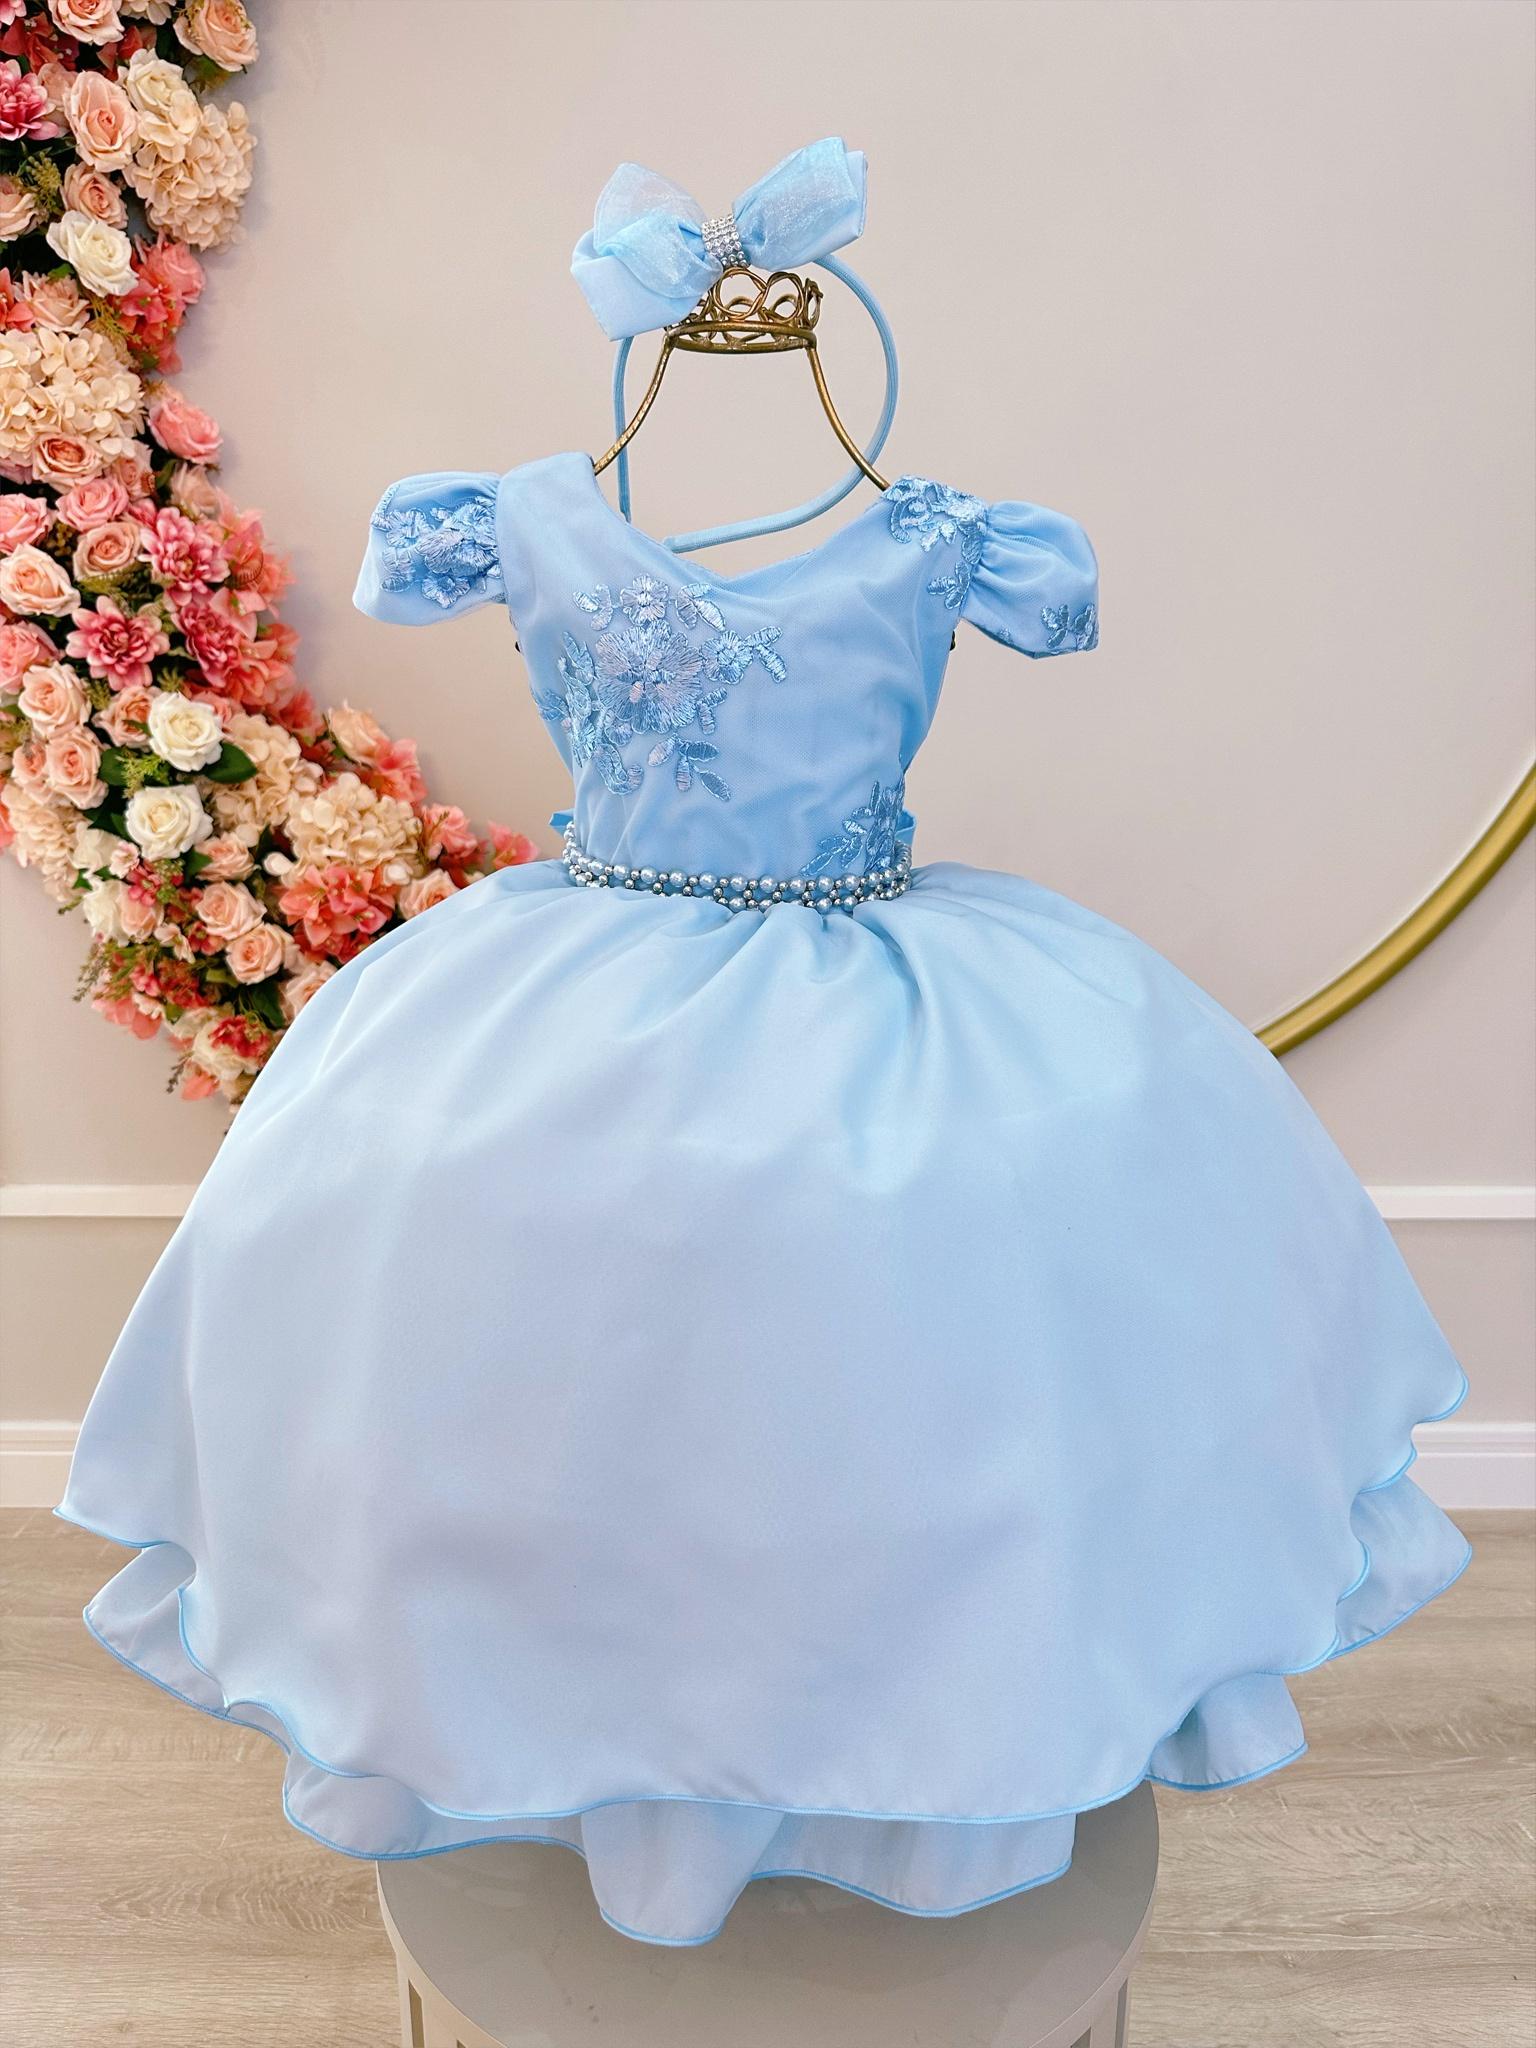 Vestido Infantil Azul Bebê Tiara C/ Renda e Cinto de Pérolas